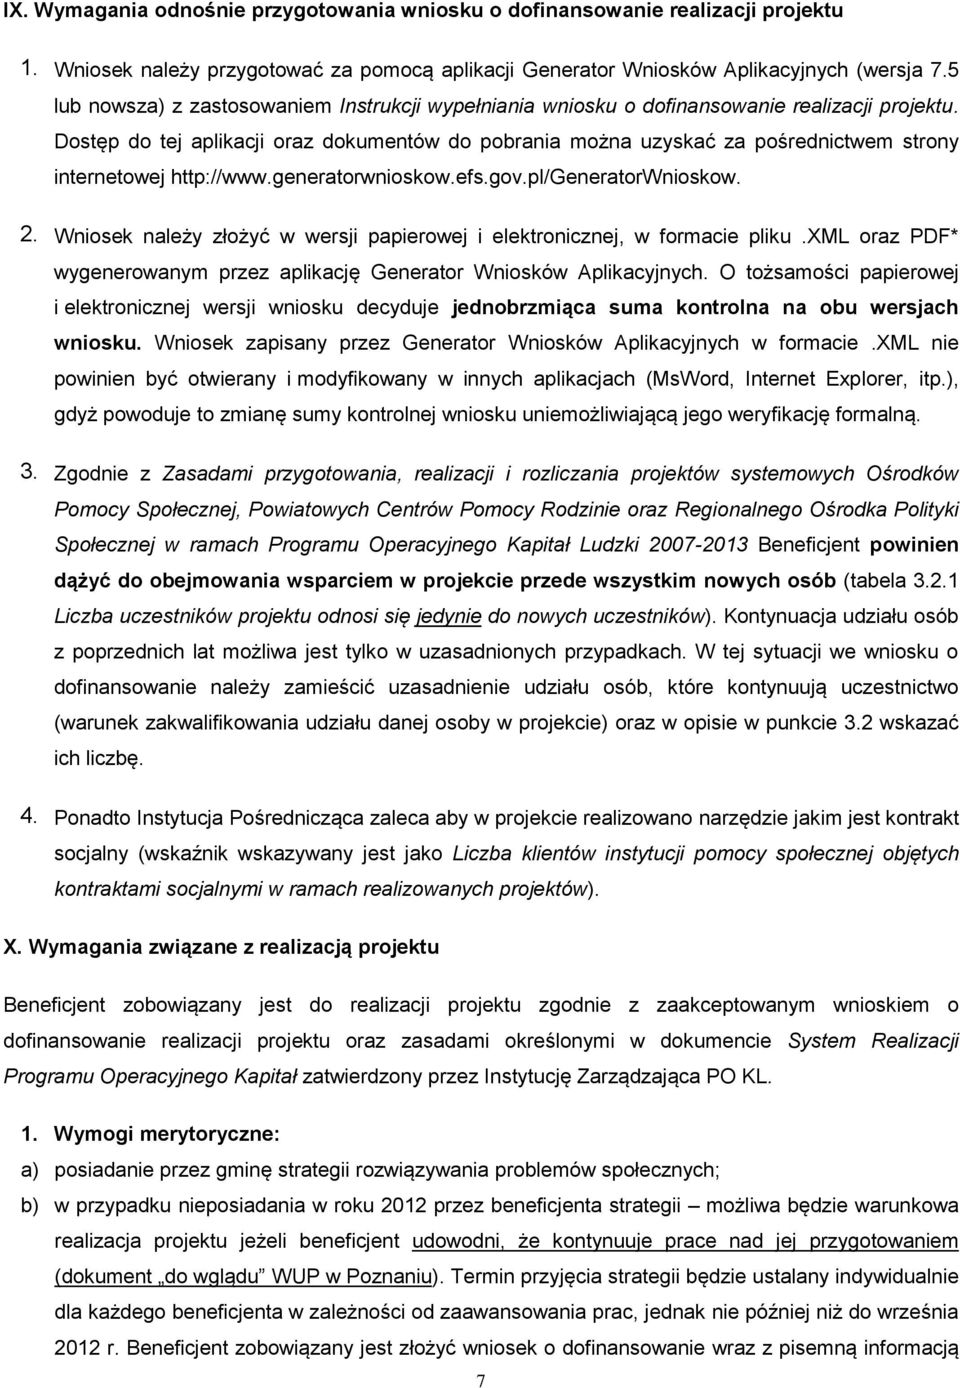 Dostęp do tej aplikacji oraz dokumentów do pobrania można uzyskać za pośrednictwem strony internetowej http://www.generatorwnioskow.efs.gov.pl/generatorwnioskow. 2.